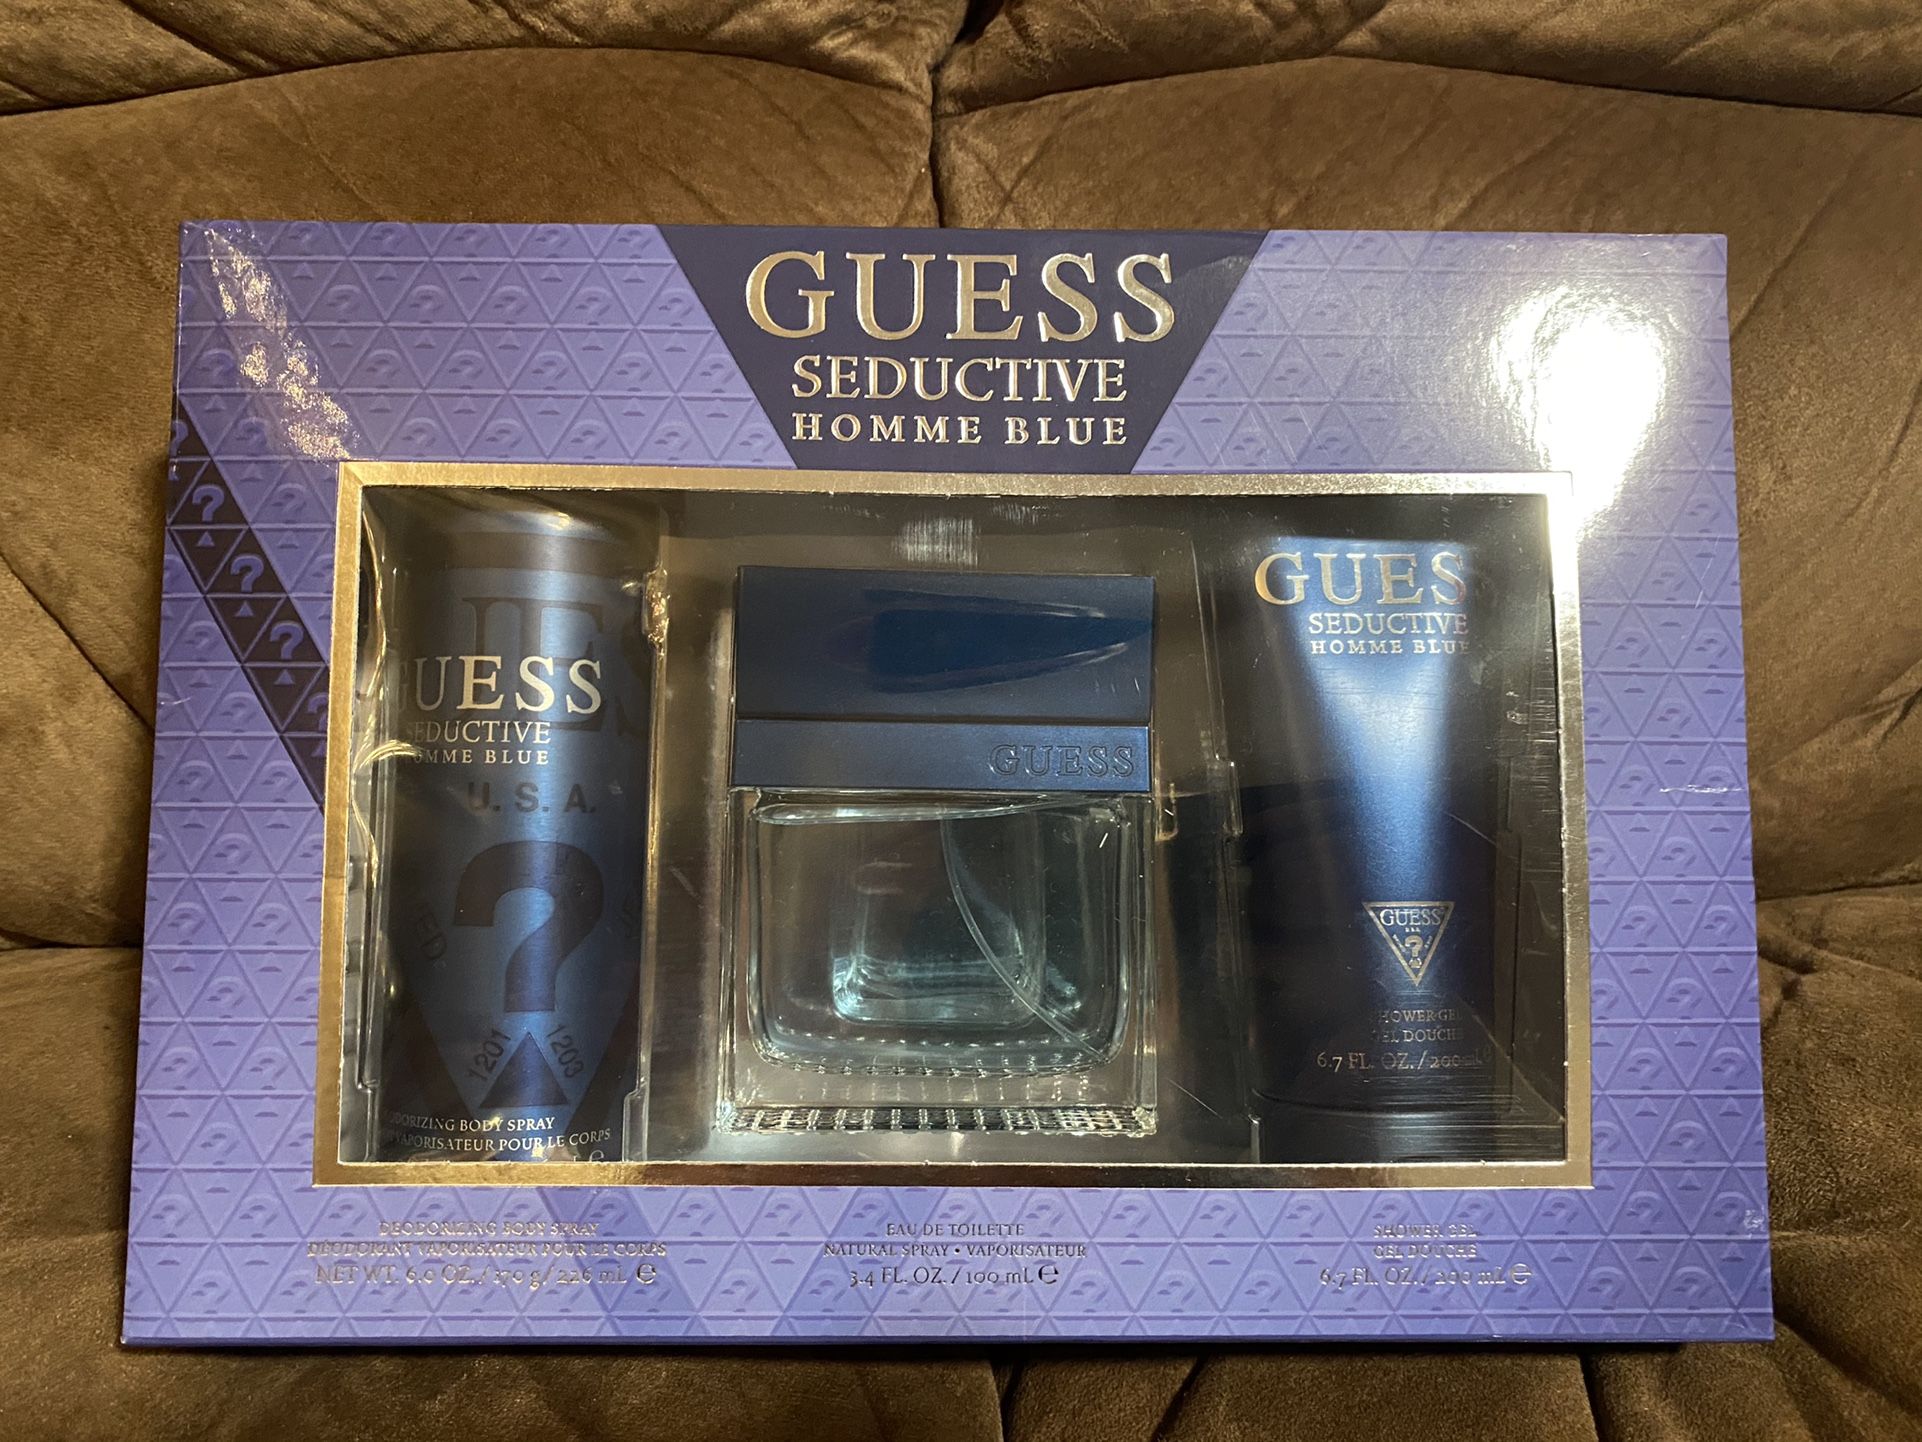 Guess seductive homme blue gift set